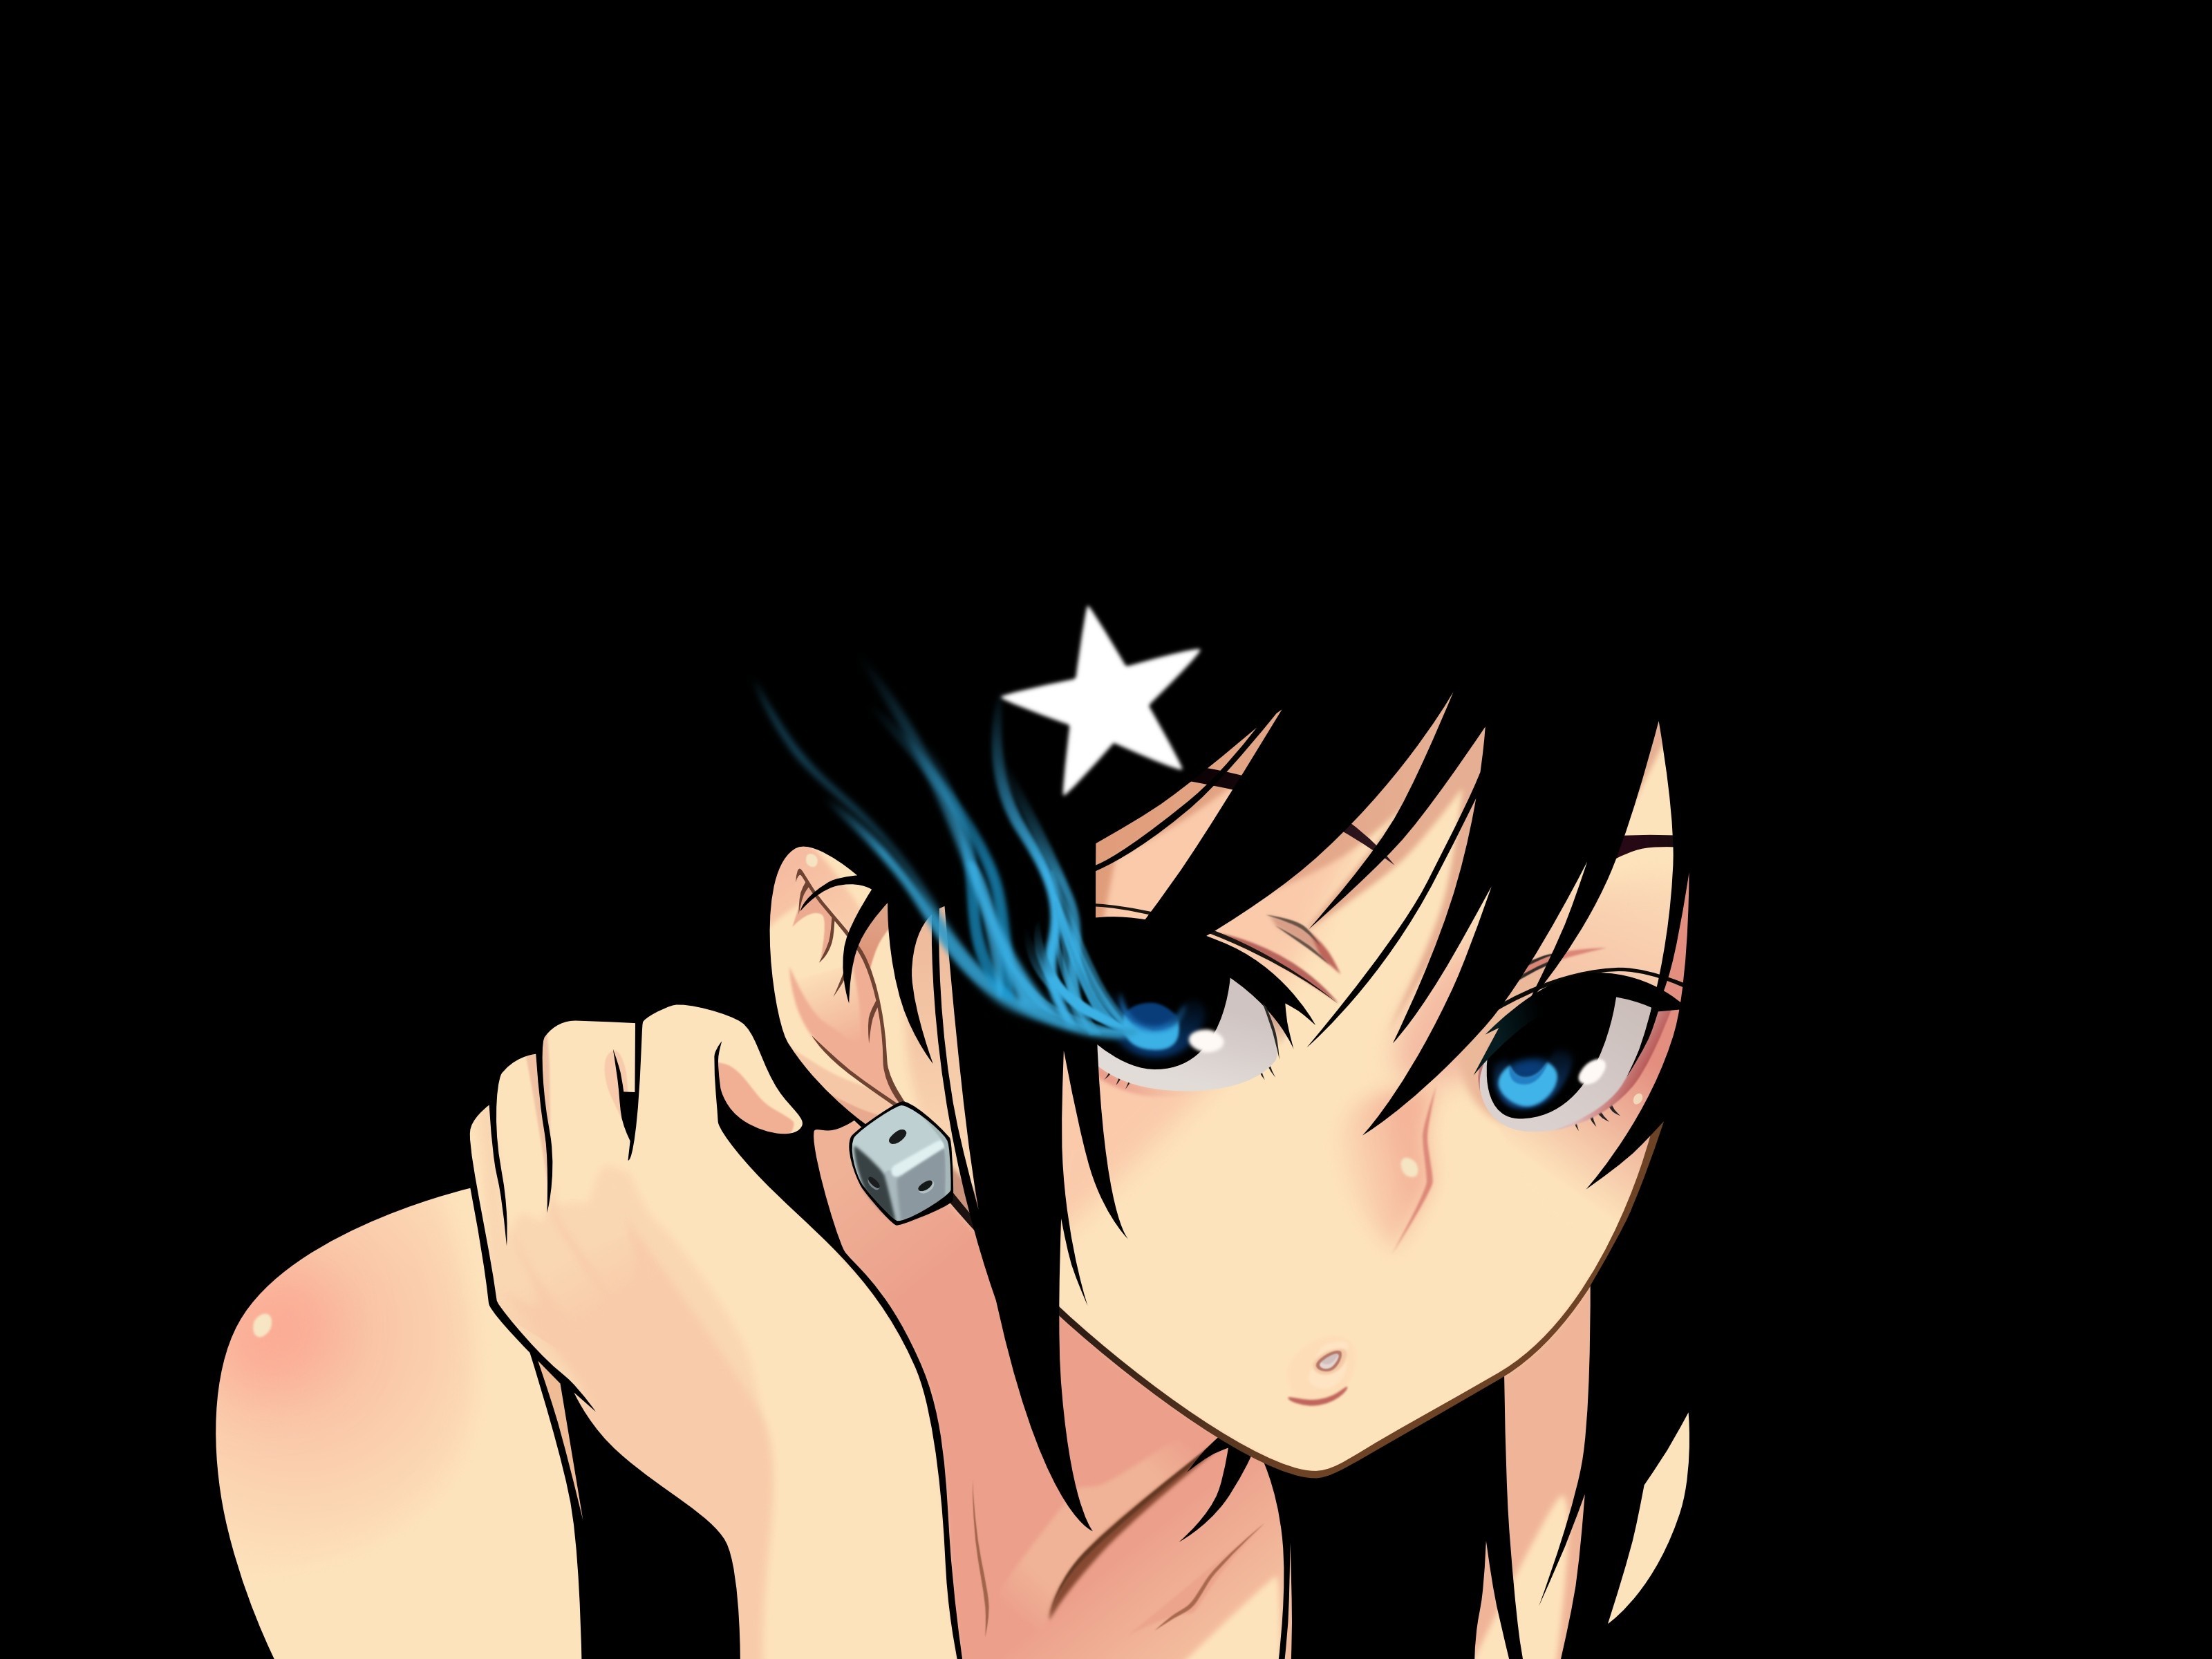 blue, Black, Women, Anime Girls, Black Rock Shooter Wallpaper